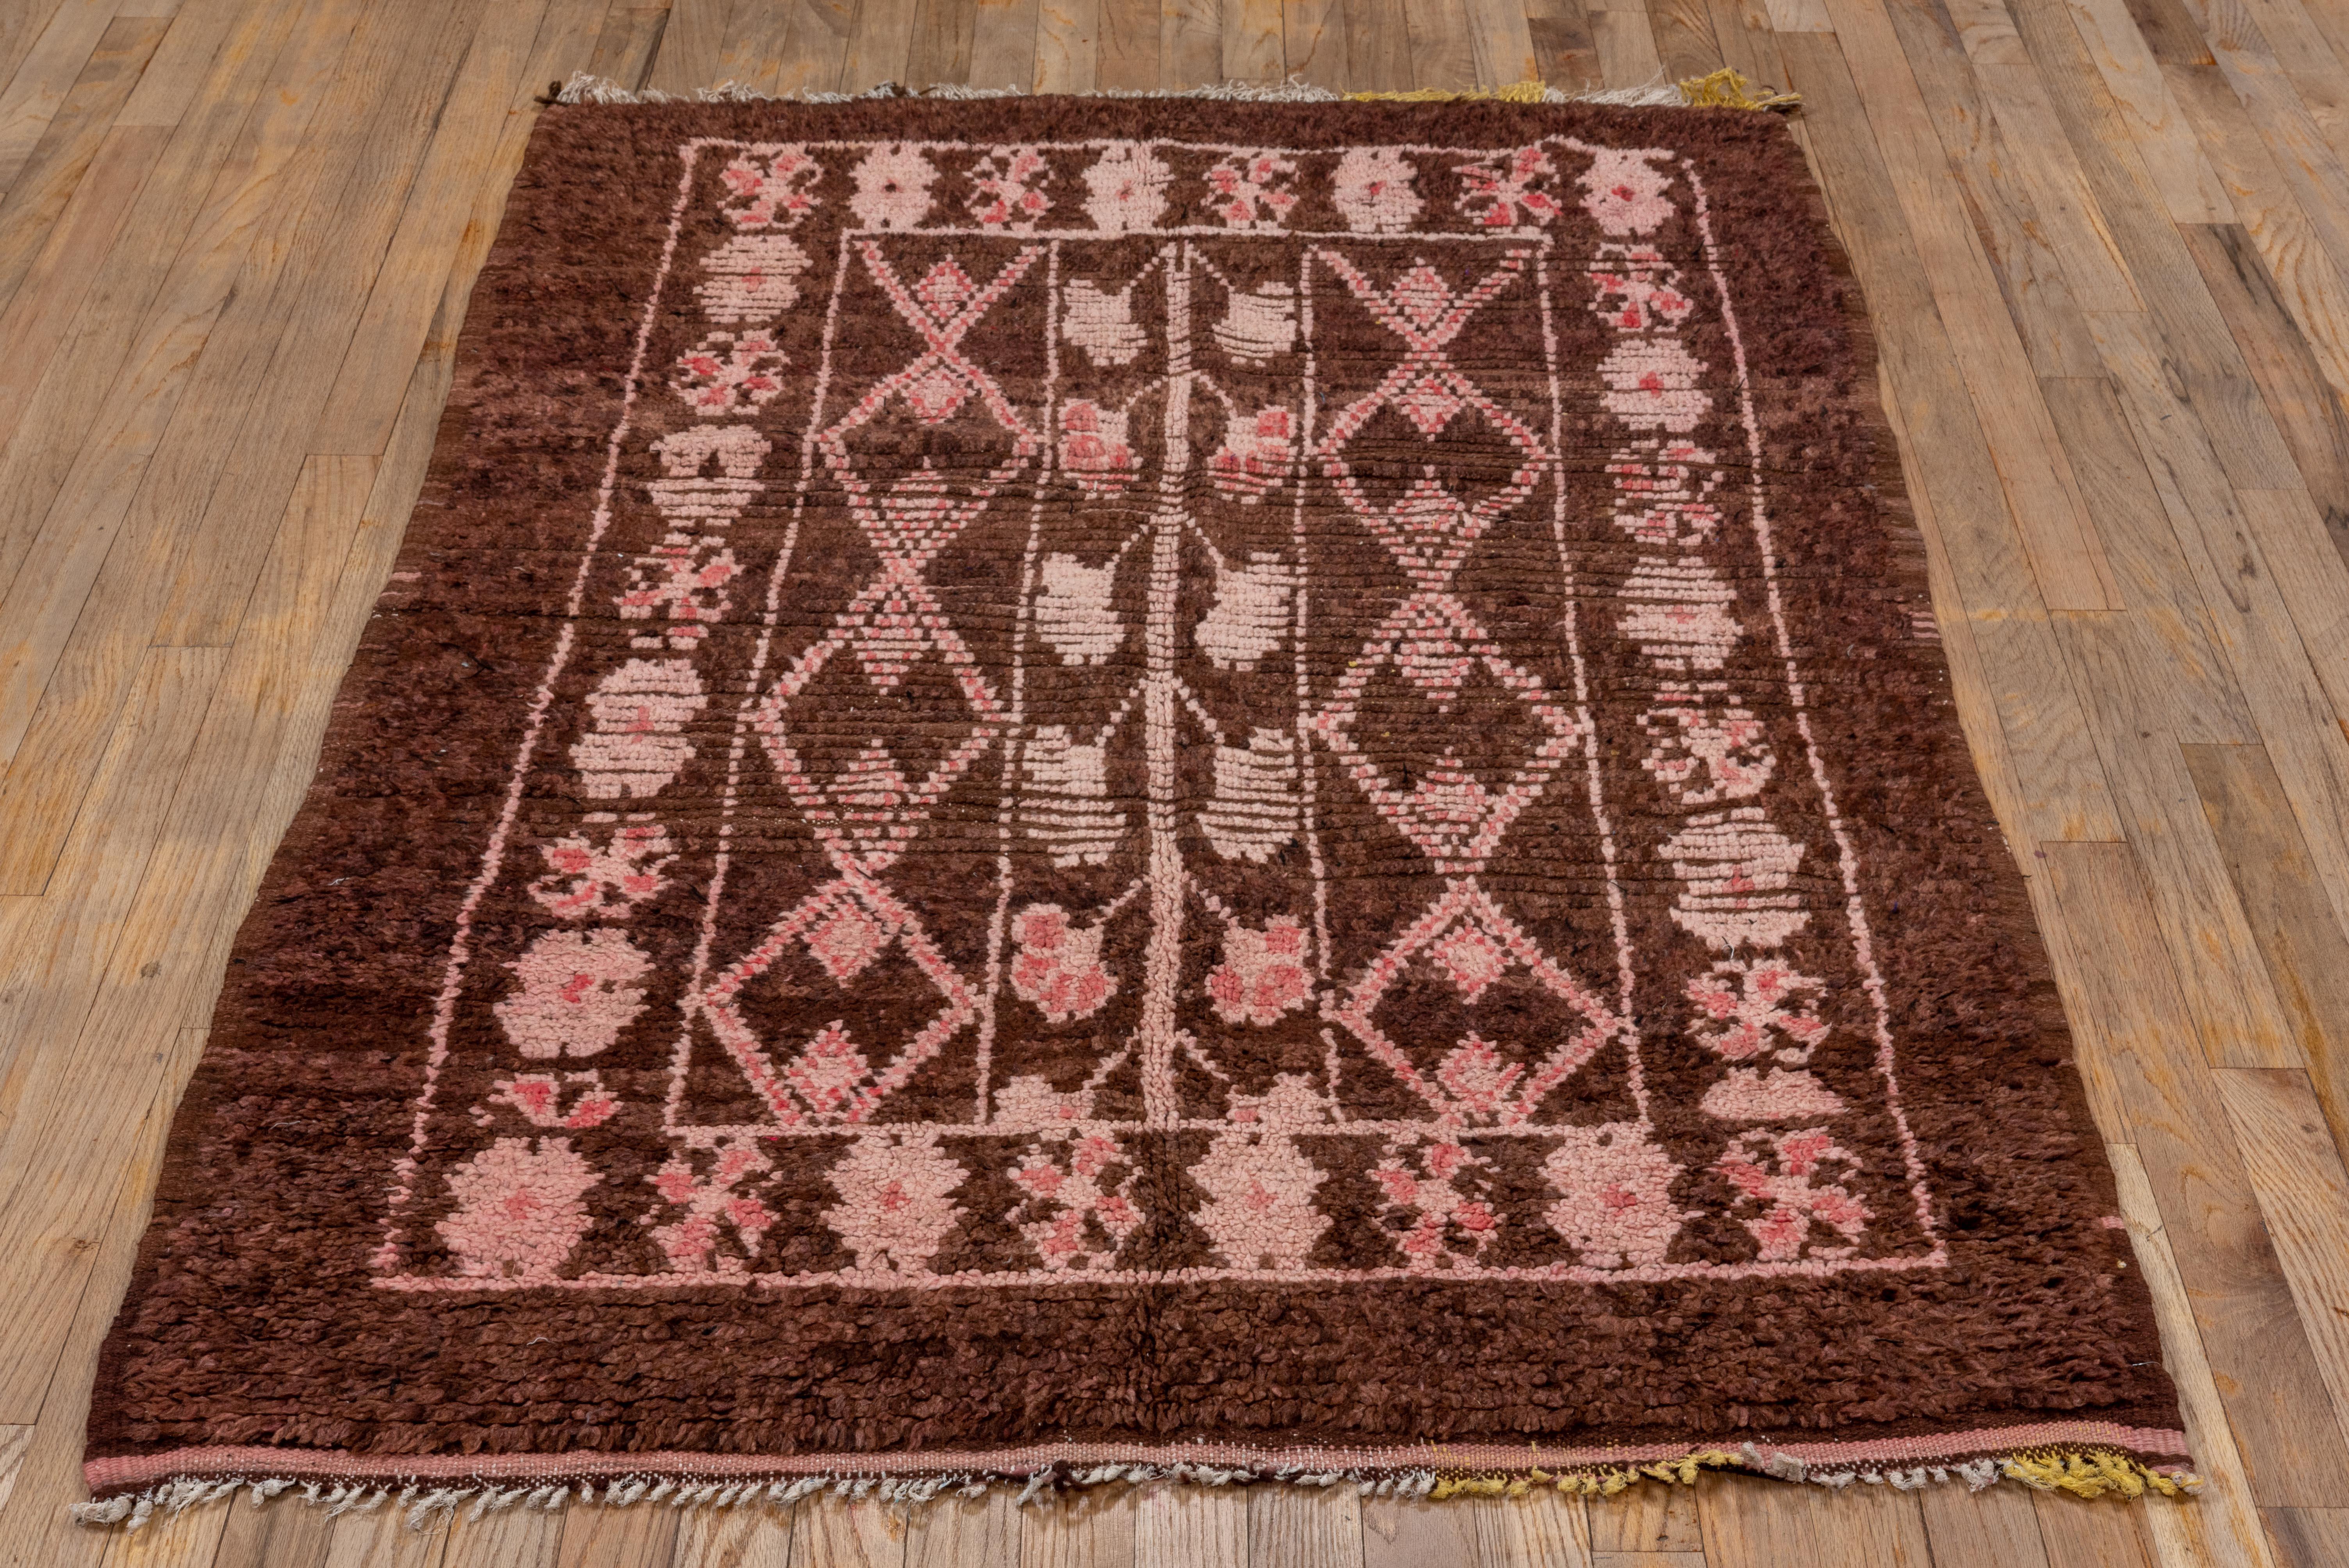 Traditioneller Dorfteppich aus Marokko, wahrscheinlich von einer bedeutenden Stammesgruppe. Das Muster wird ohne Umriss entworfen und vollständig aus dem Gedächtnis erstellt.